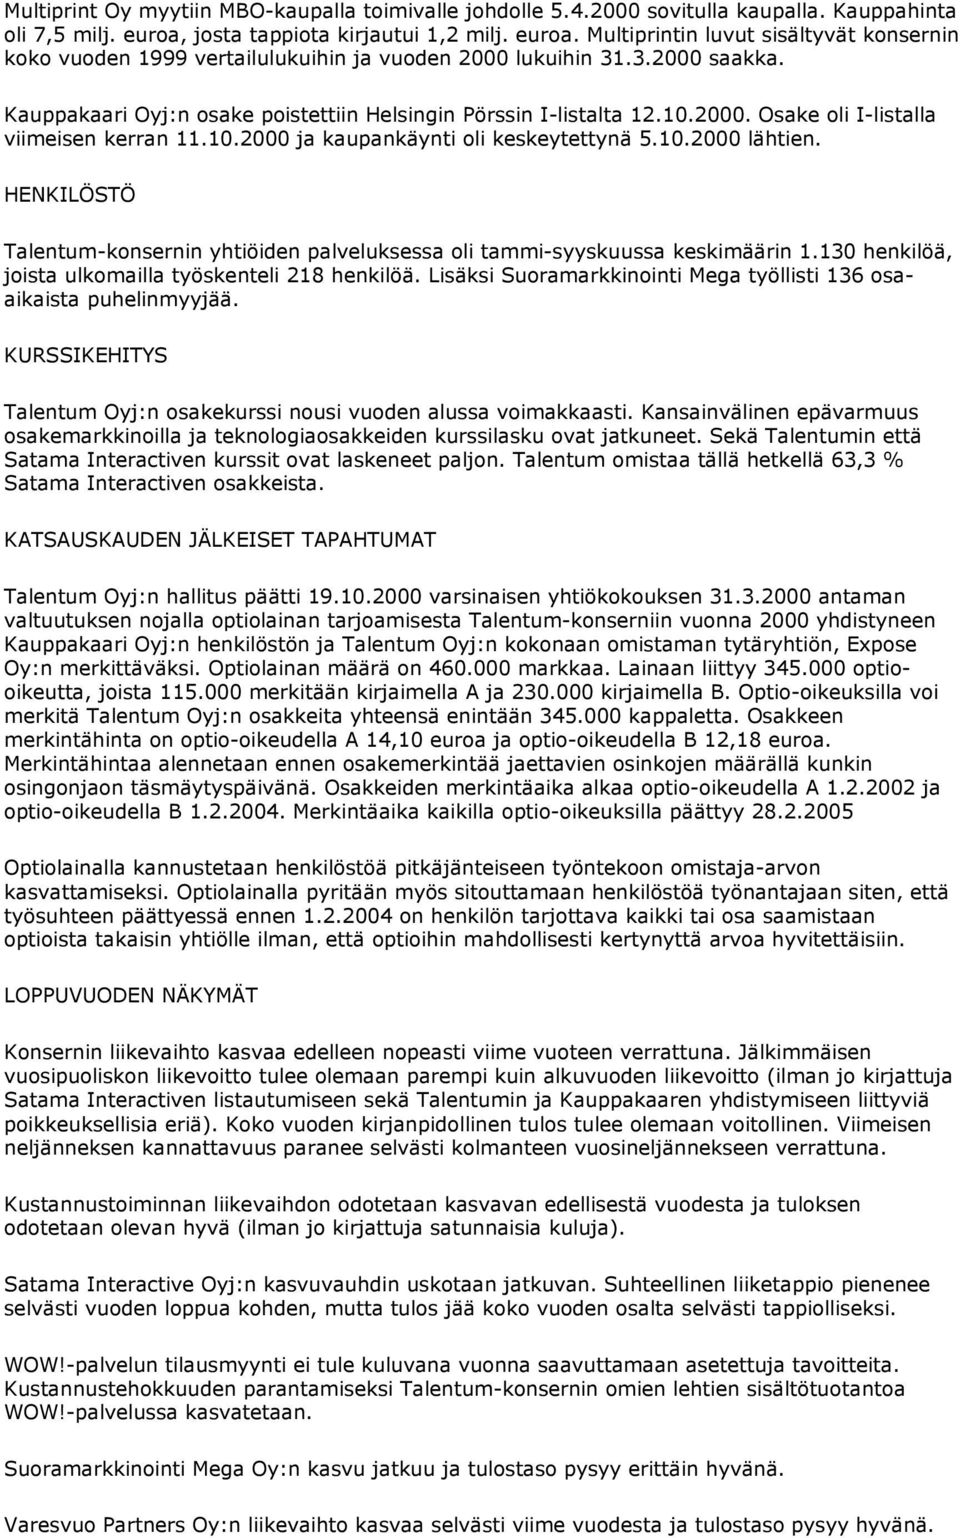 Kauppakaari Oyj:n osake poistettiin Helsingin Pörssin I-listalta 12.10.2000. Osake oli I-listalla viimeisen kerran 11.10.2000 ja kaupankäynti oli keskeytettynä 5.10.2000 lähtien.